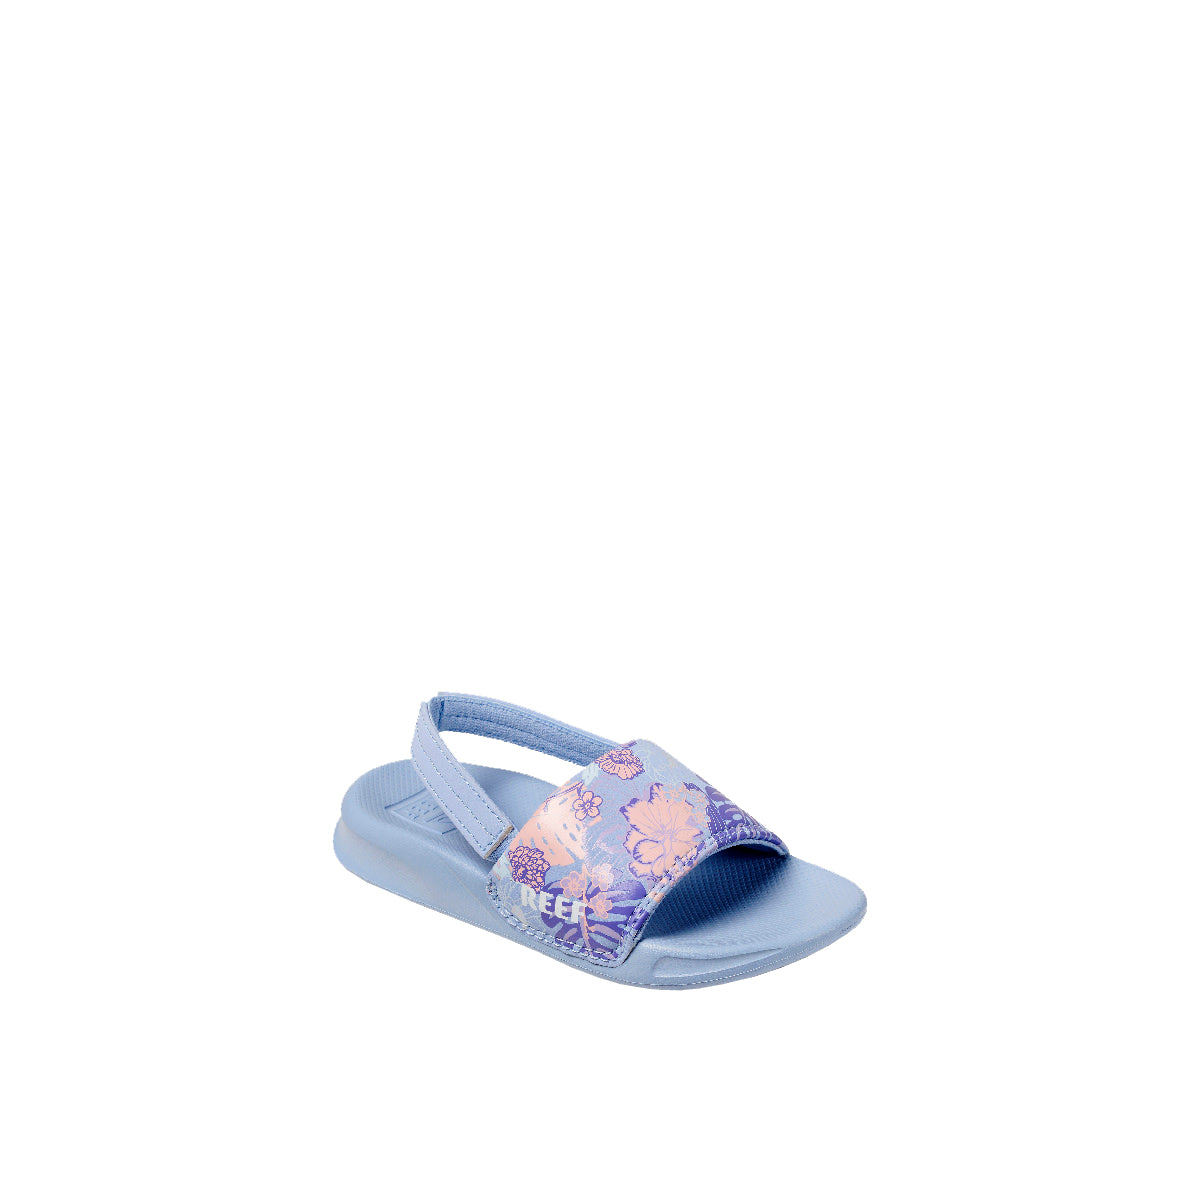 Reef Little One Slide Girls Sandal Lavender Lei 3 C